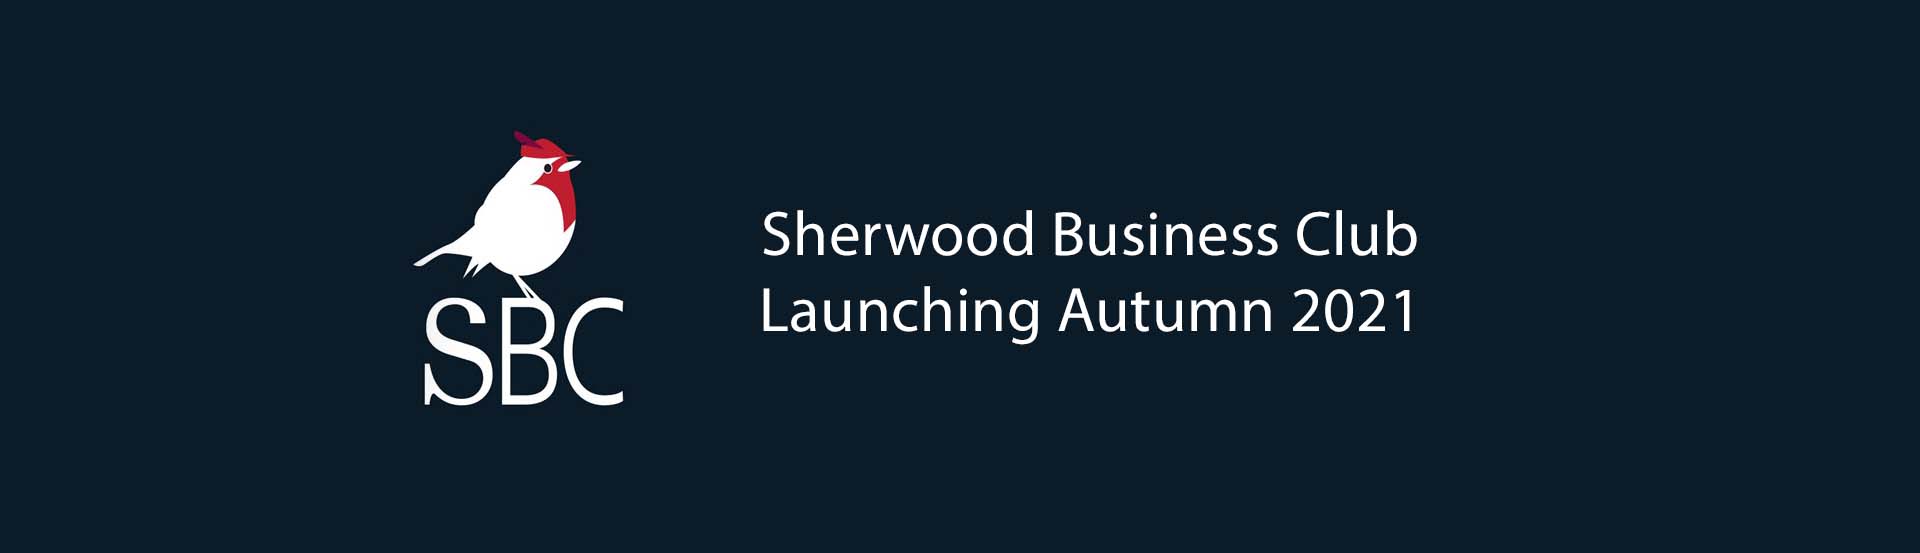 Sherwood Business Club